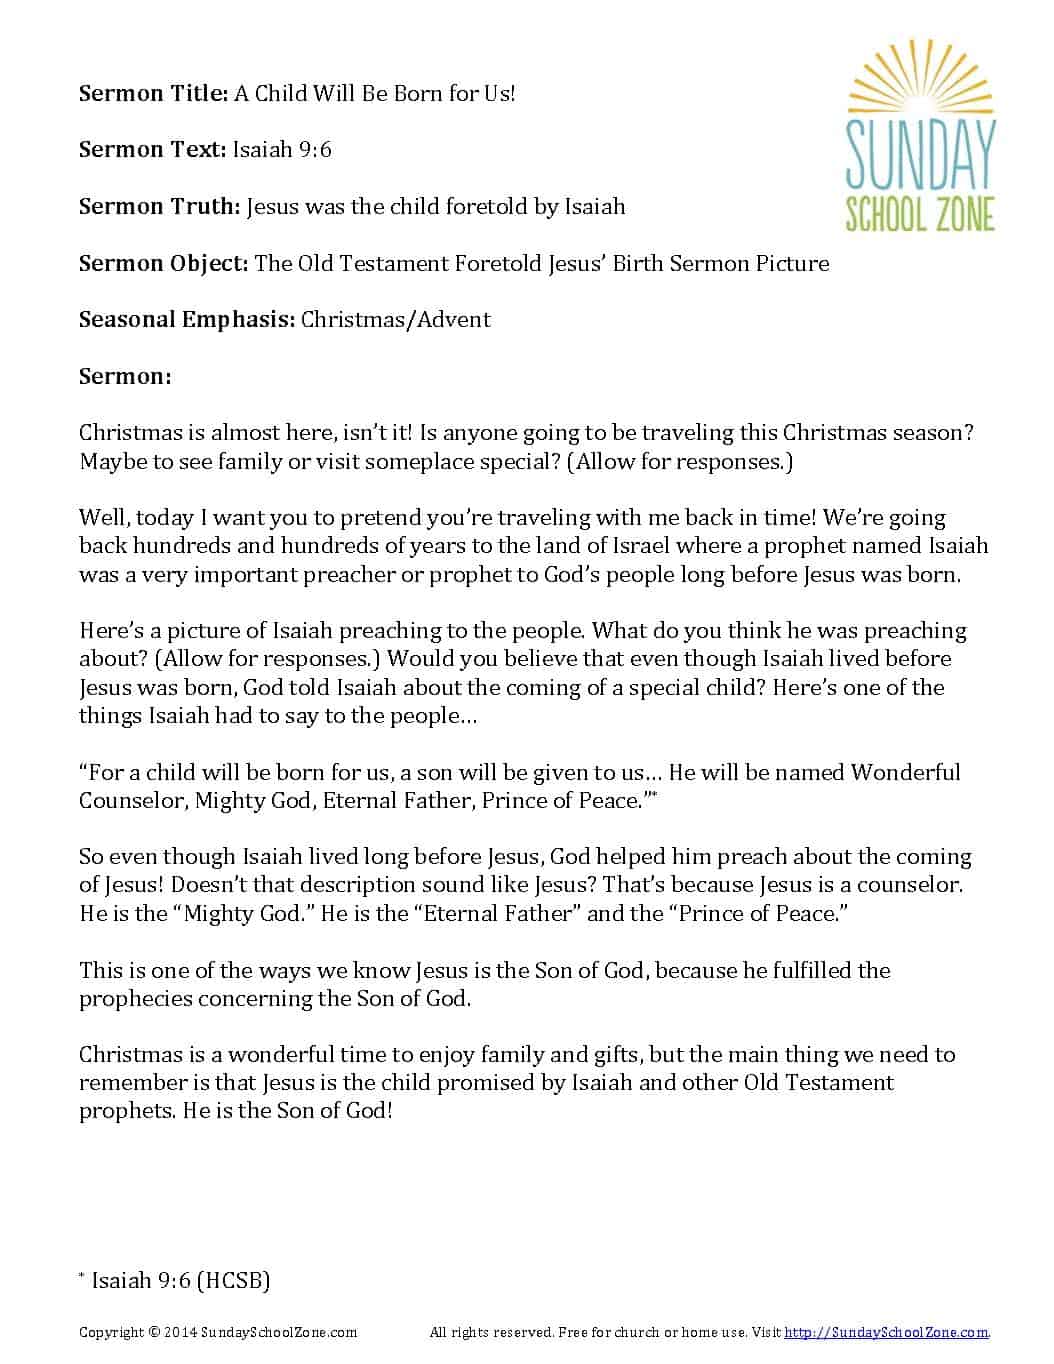 Free Printable Christmas Sermons